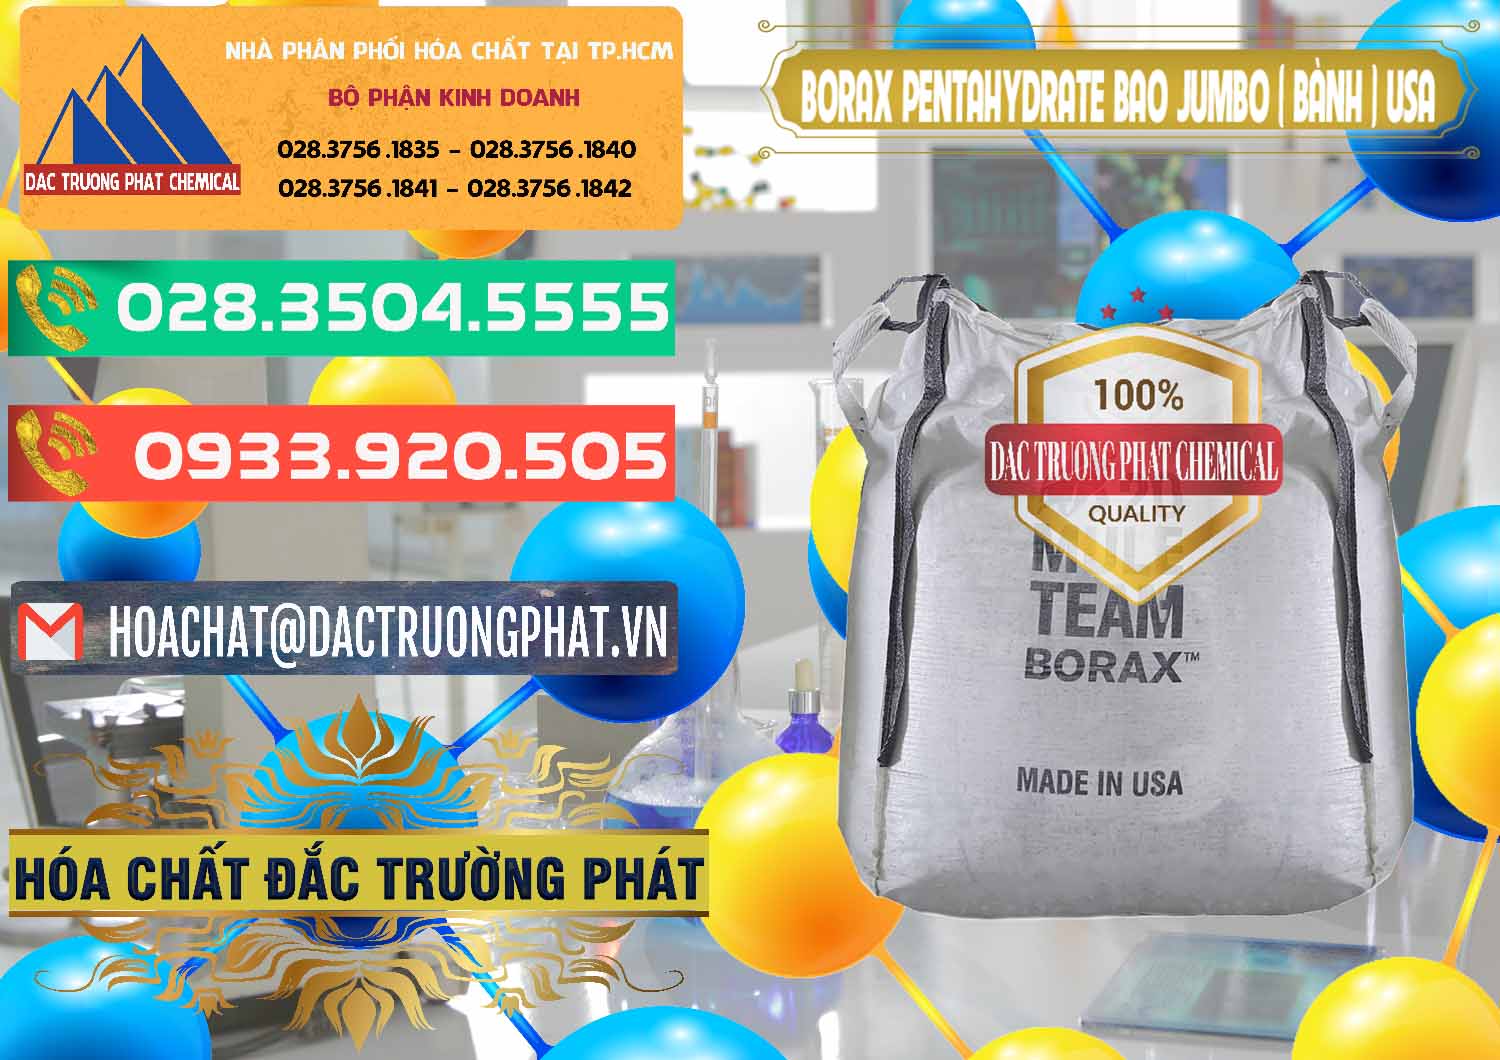 Công ty chuyên bán và cung ứng Borax Pentahydrate Bao Jumbo ( Bành ) Mule 20 Team Mỹ Usa - 0278 - Đơn vị chuyên phân phối _ cung ứng hóa chất tại TP.HCM - congtyhoachat.com.vn